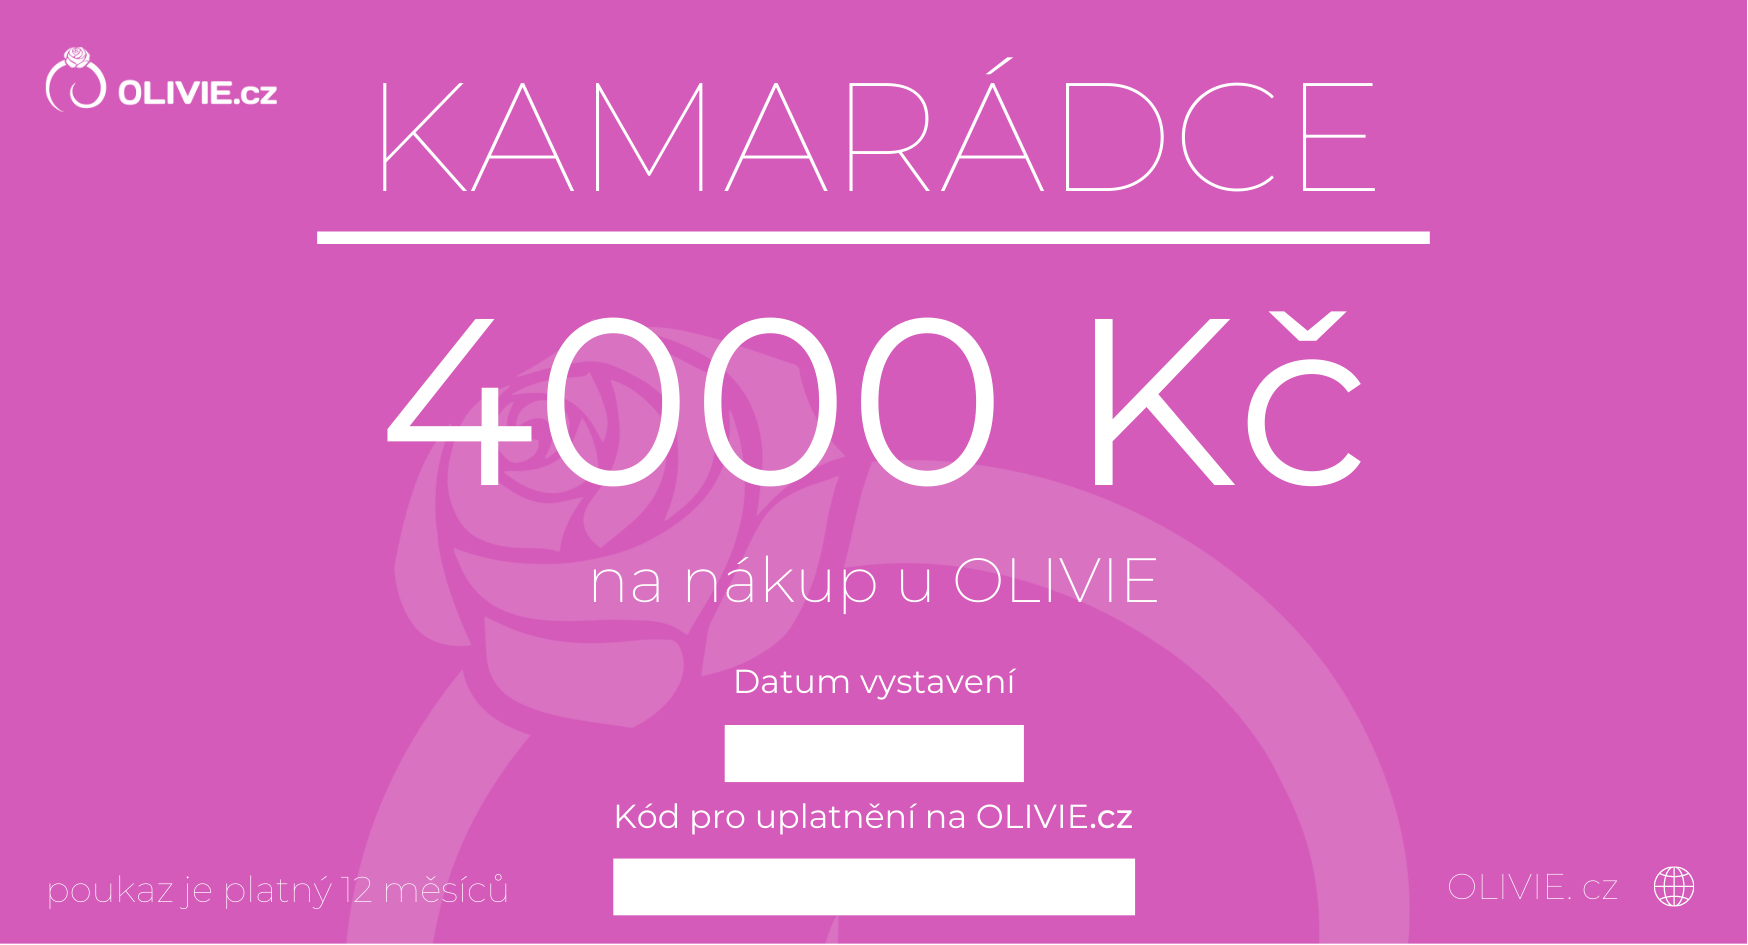 OLIVIE Elektronický dárkový poukaz KAMARÁDCE Hodnota: 4000 Kč